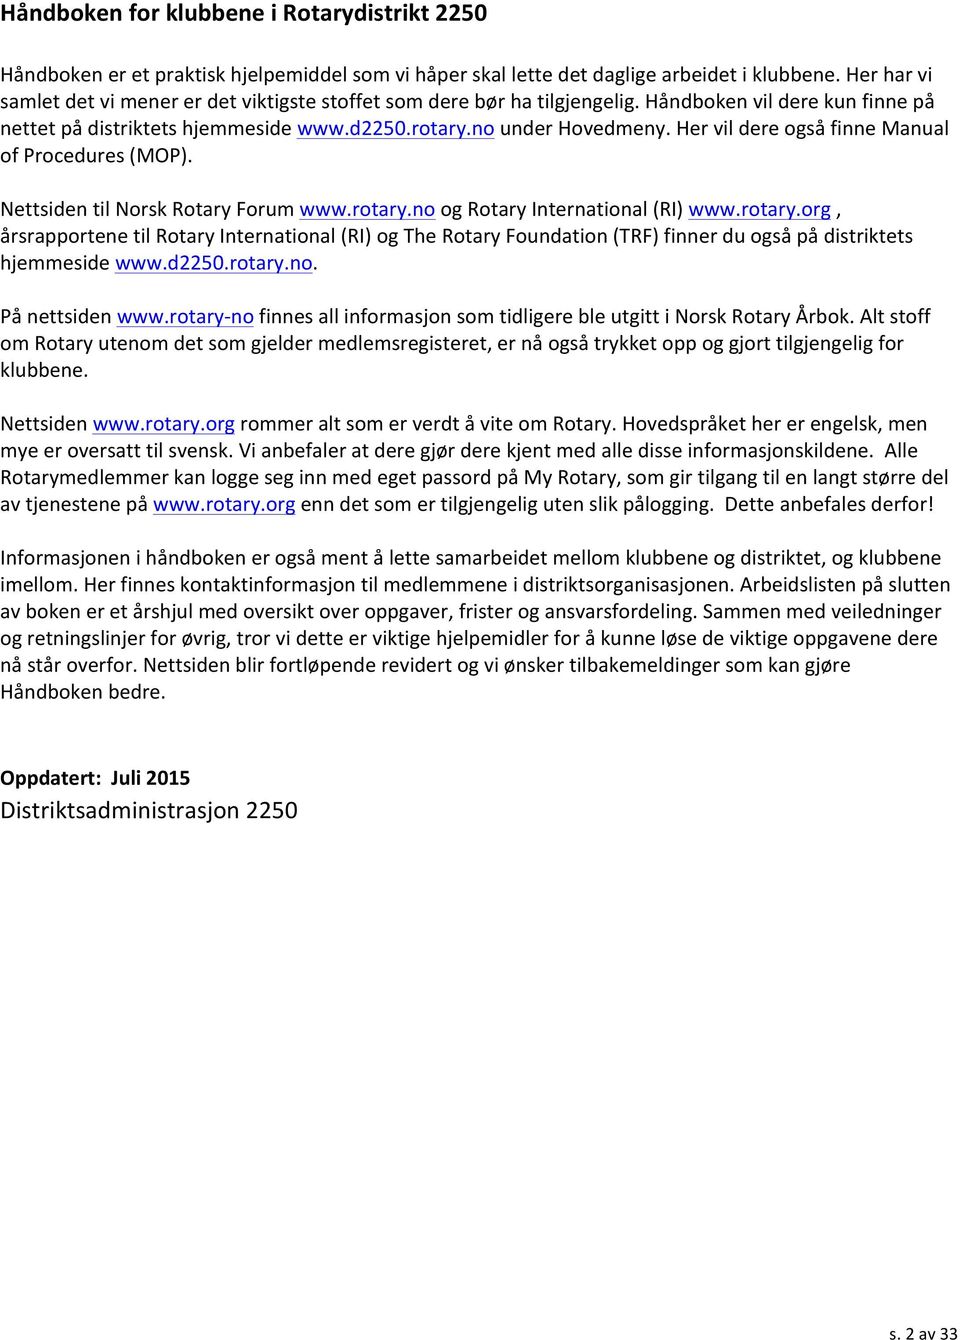 Her vil dere også finne Manual of Procedures (MOP). Nettsiden til Norsk Rotary Forum www.rotary.